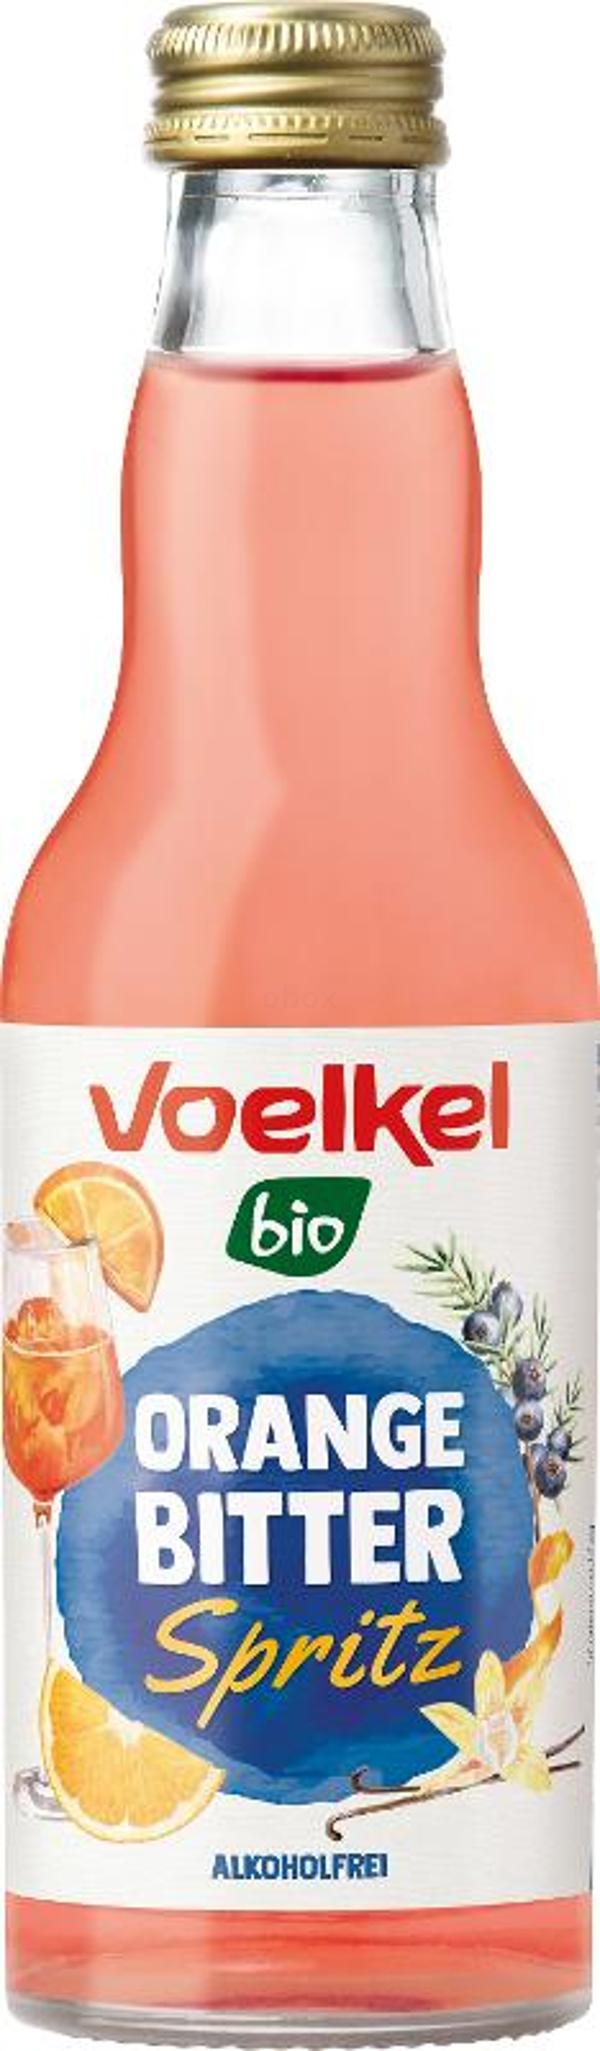 Produktfoto zu Cocktail Orange Bitter Spritz